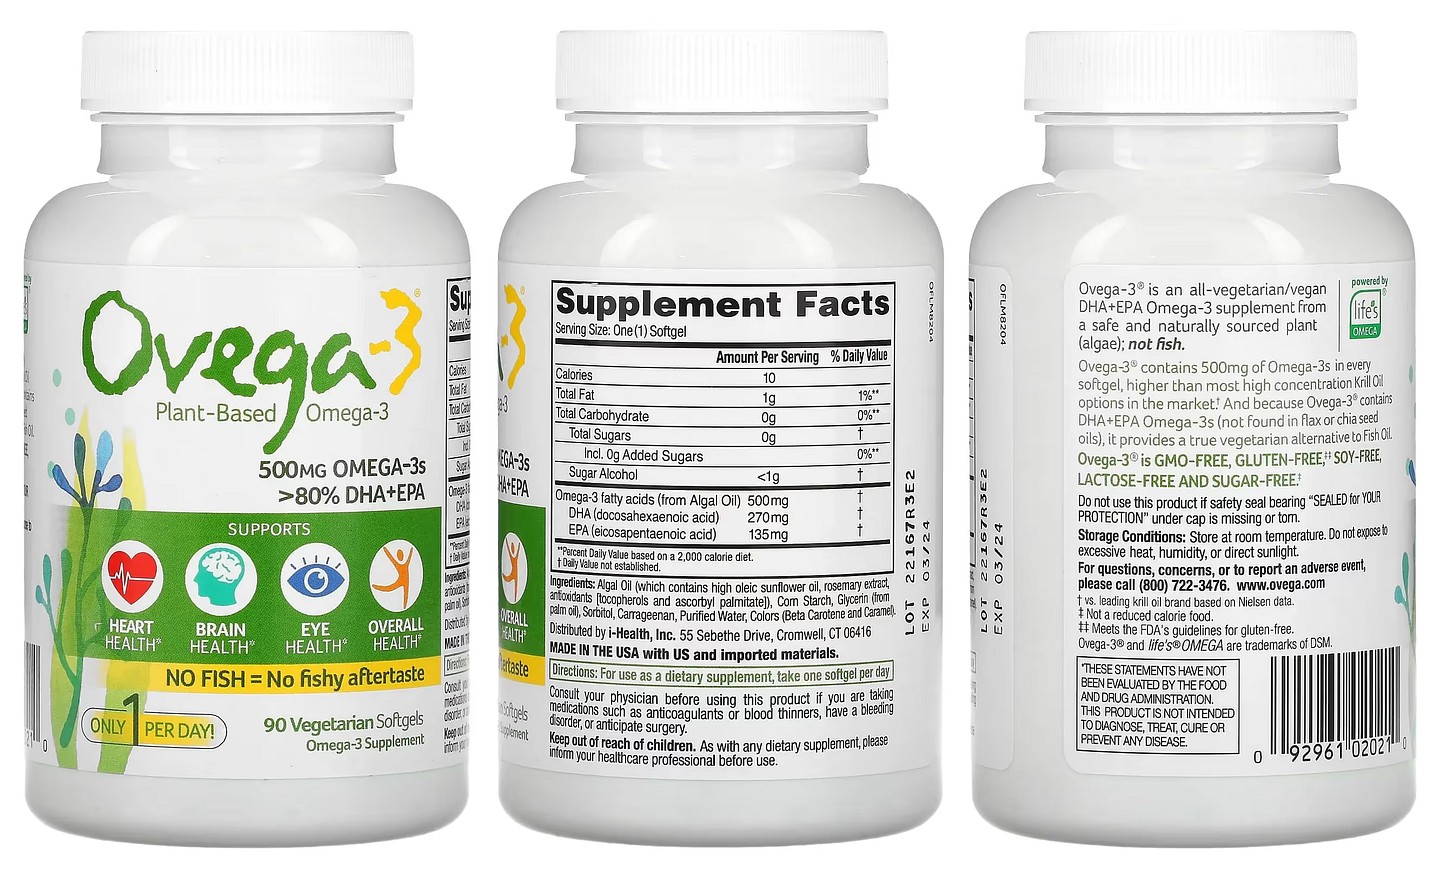 Ovega-3, Plant Based Omega-3 packaging